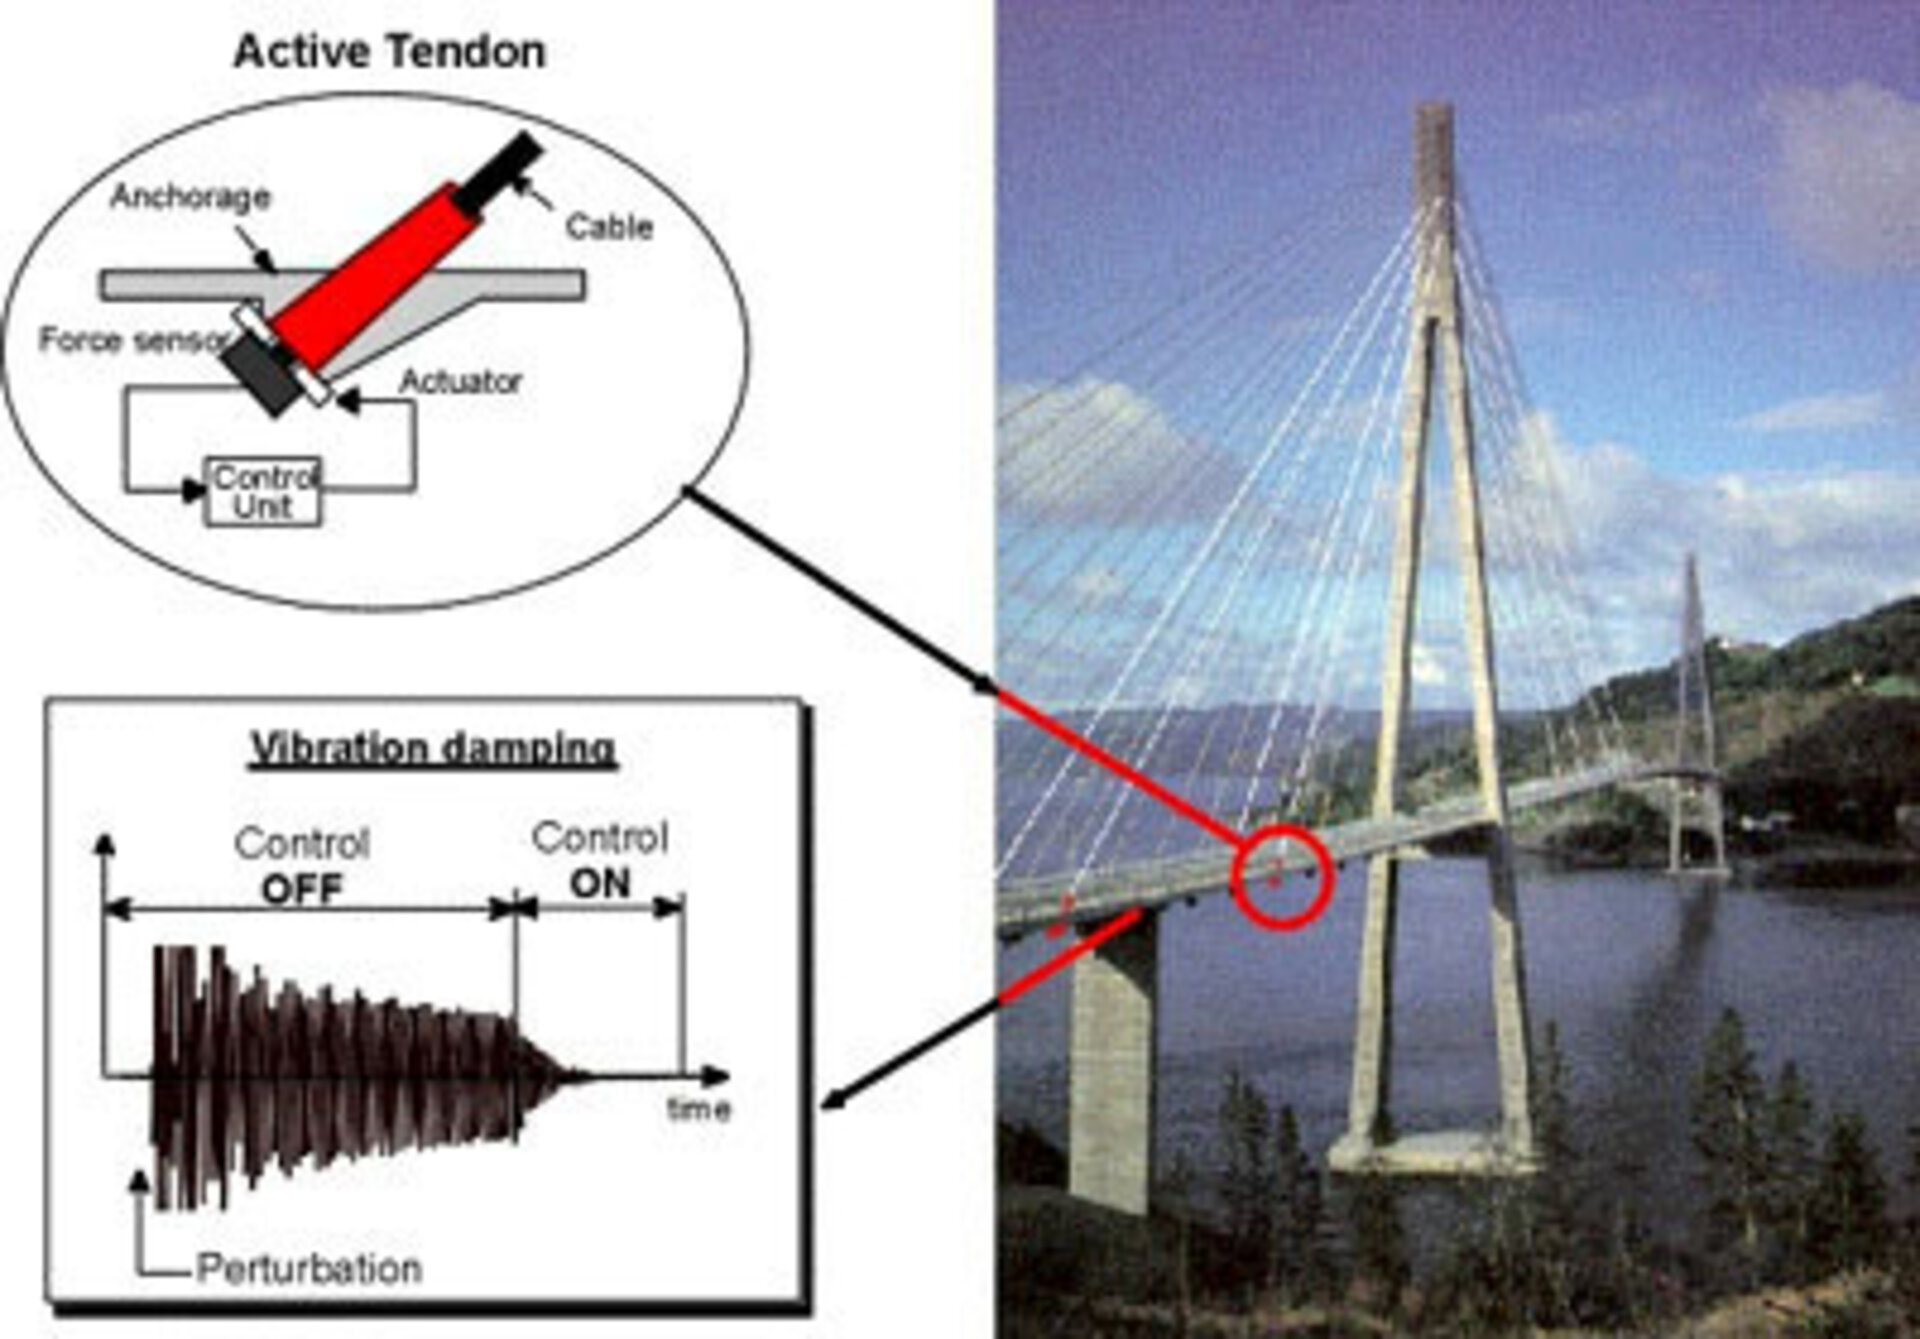 Active tendon control reduces bridge vibration